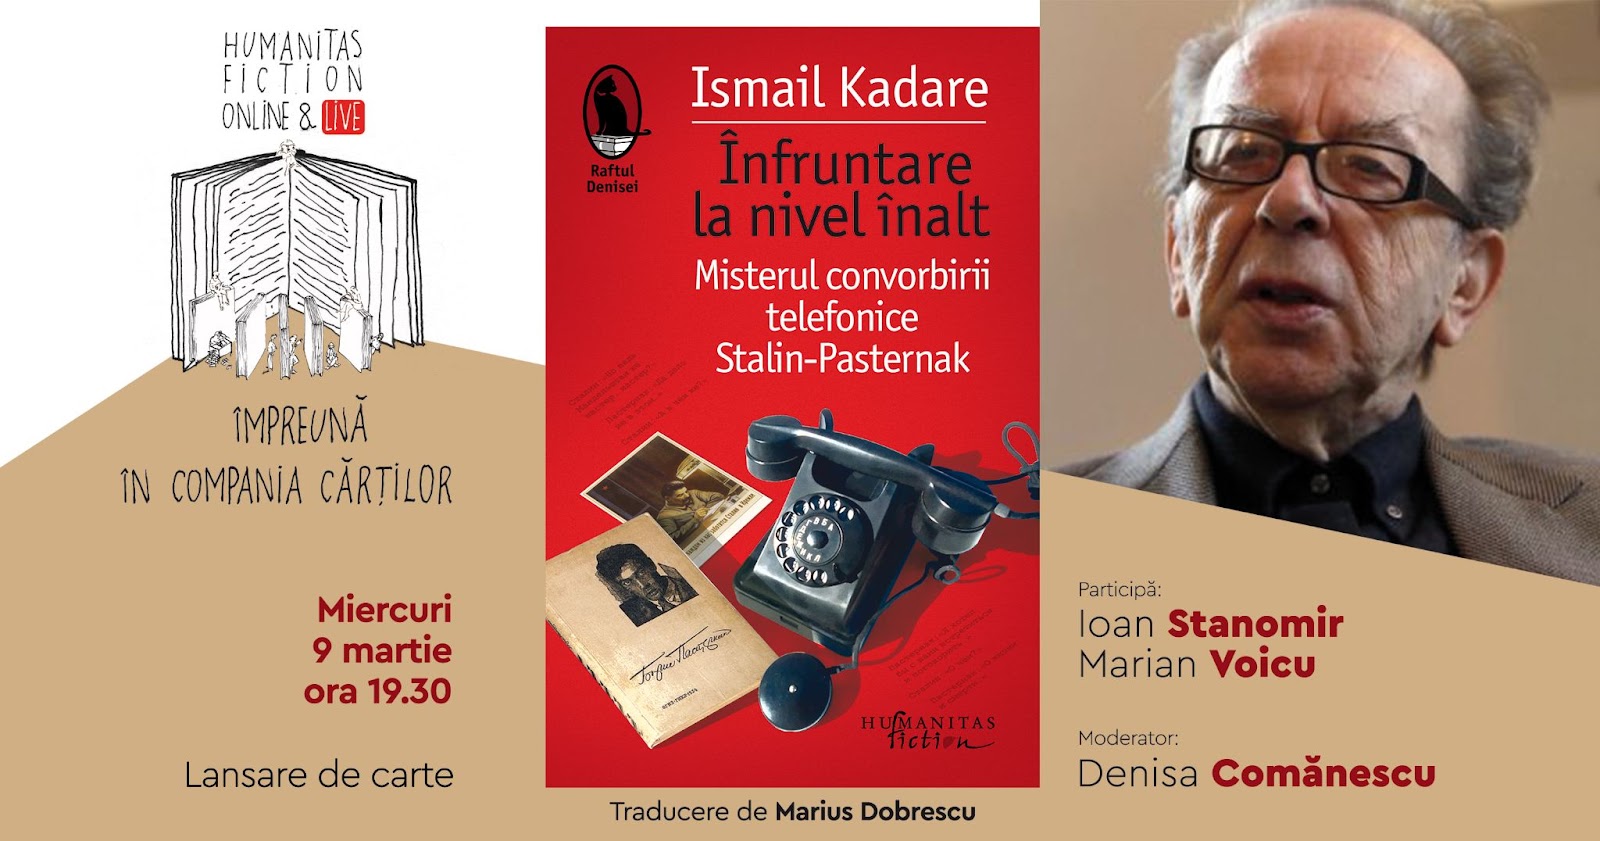 Lansare de carte #online: „Înfruntare la nivel înalt“ de Ismail Kadare –  miercuri, 9 martie, ora 19.30 | FanSF